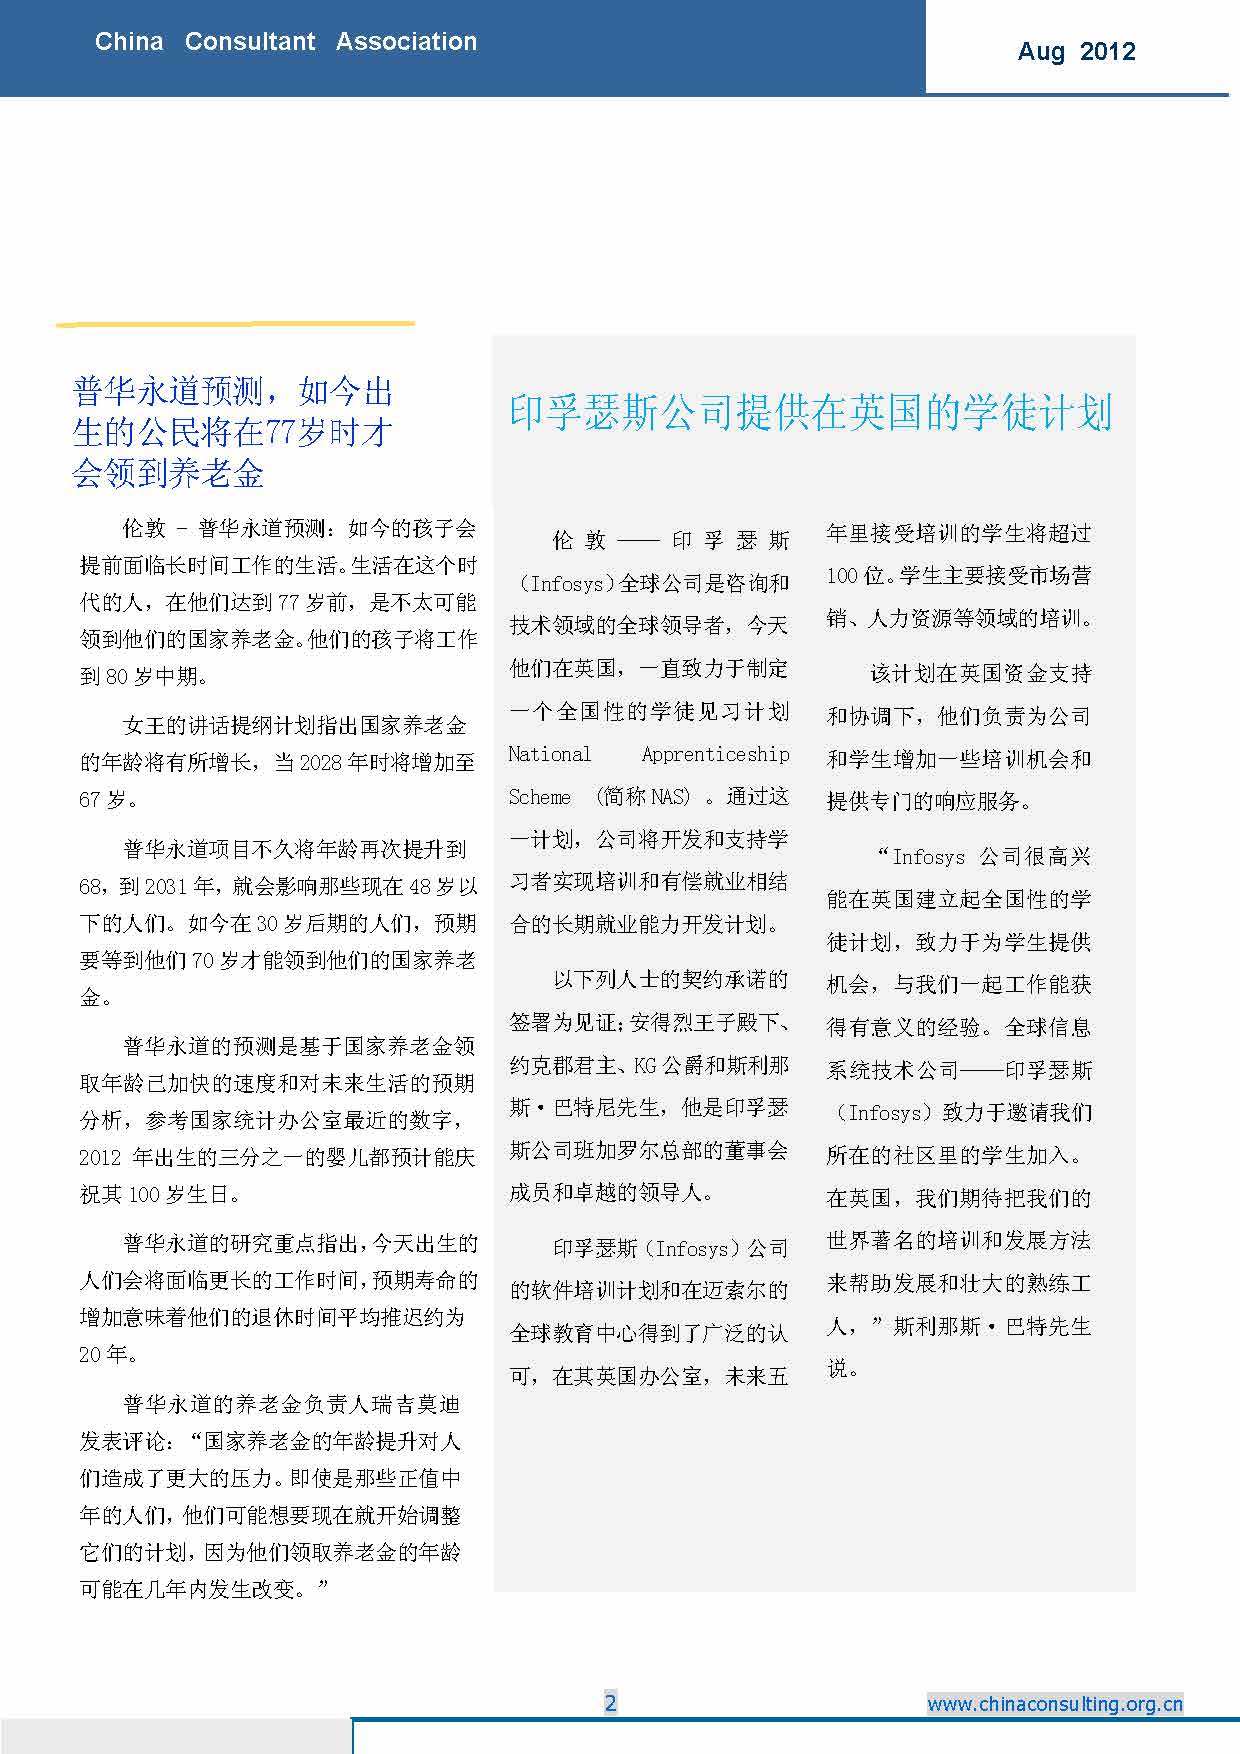 8中国科技咨询协会国际快讯（第八期）_页面_04.jpg